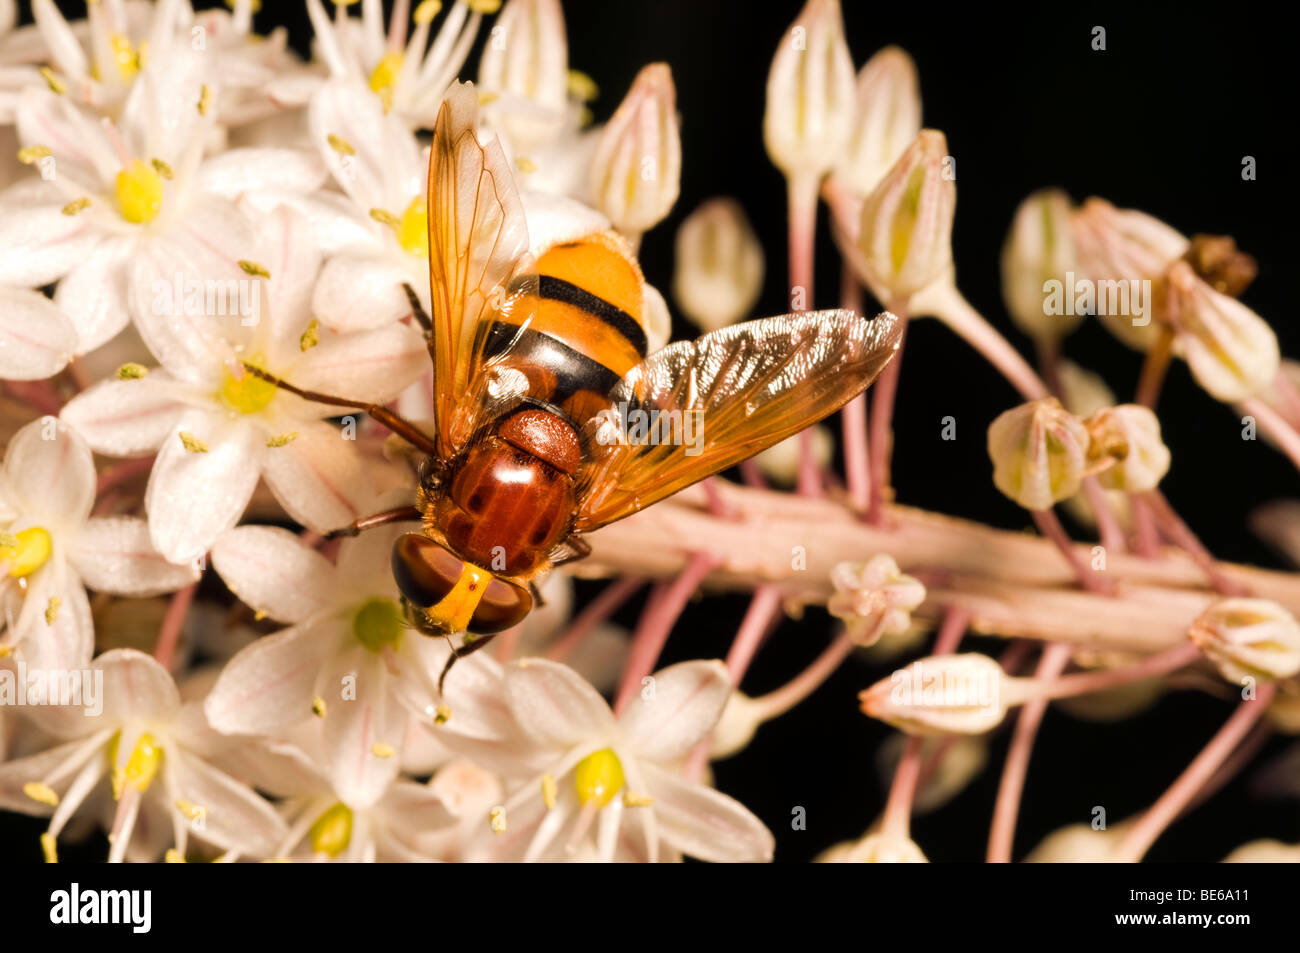 Wasp recueillir le nectar sur une fleur Banque D'Images